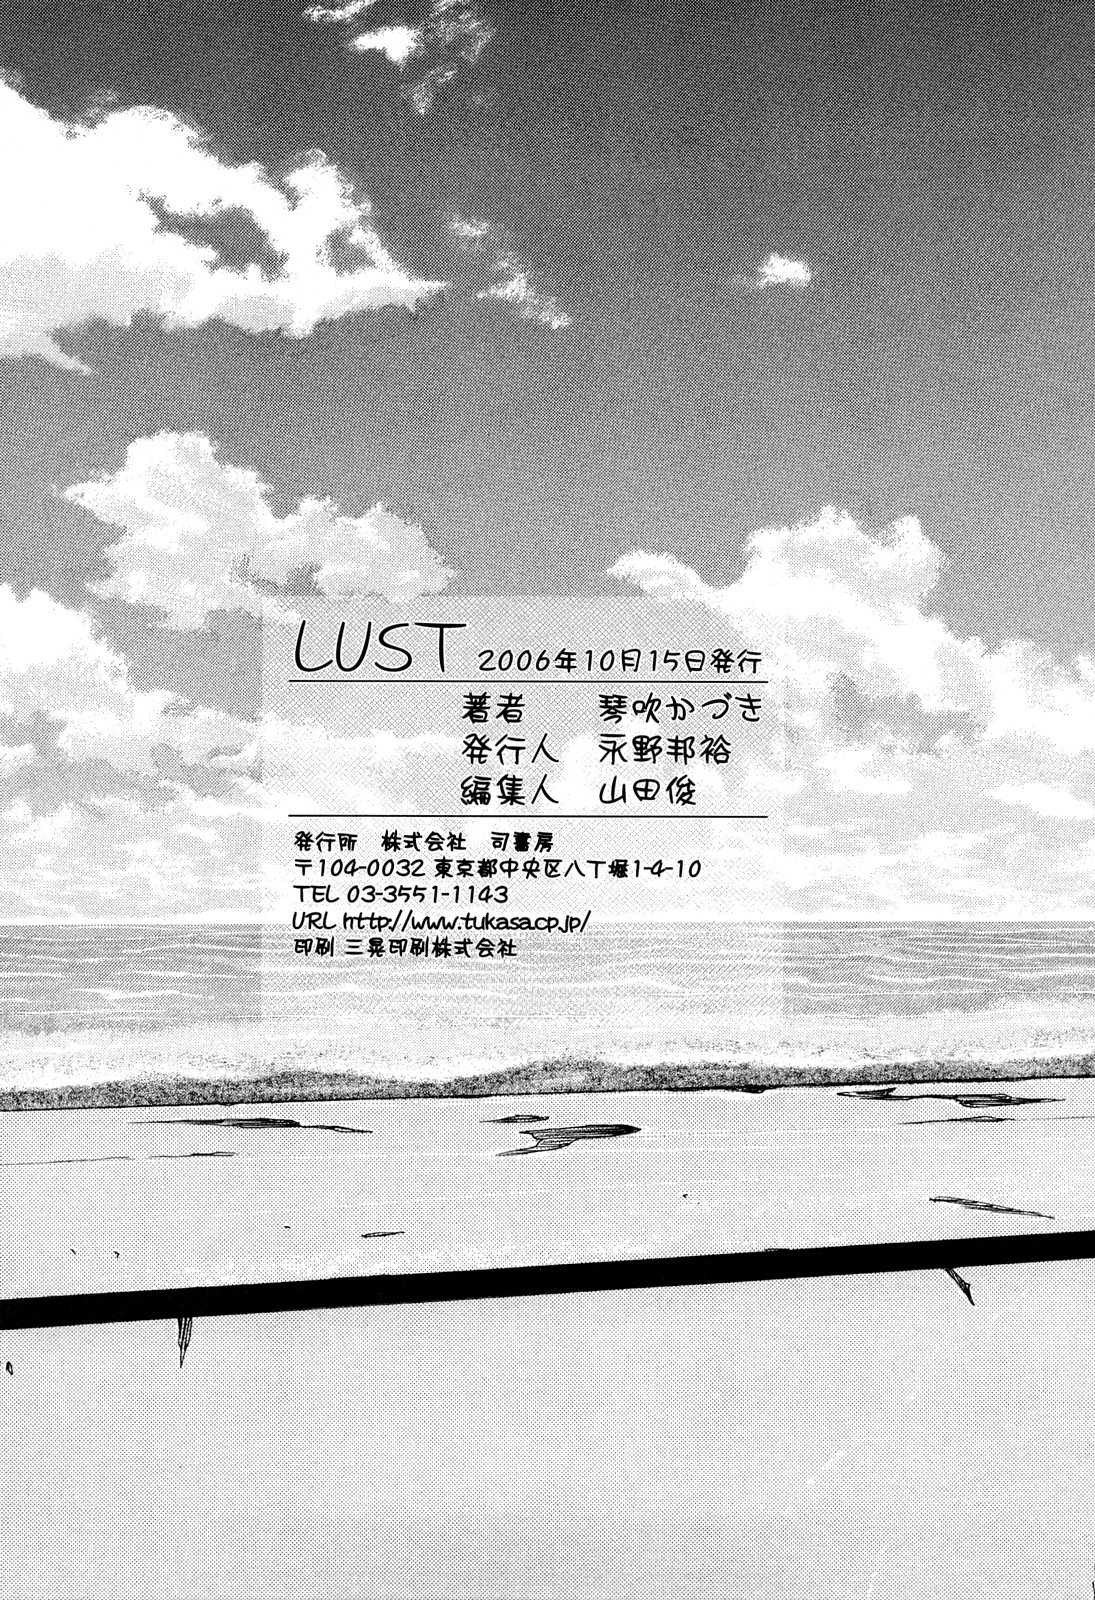 [Kotobuki Kazuki] Lust [琴吹かづき] ラスト